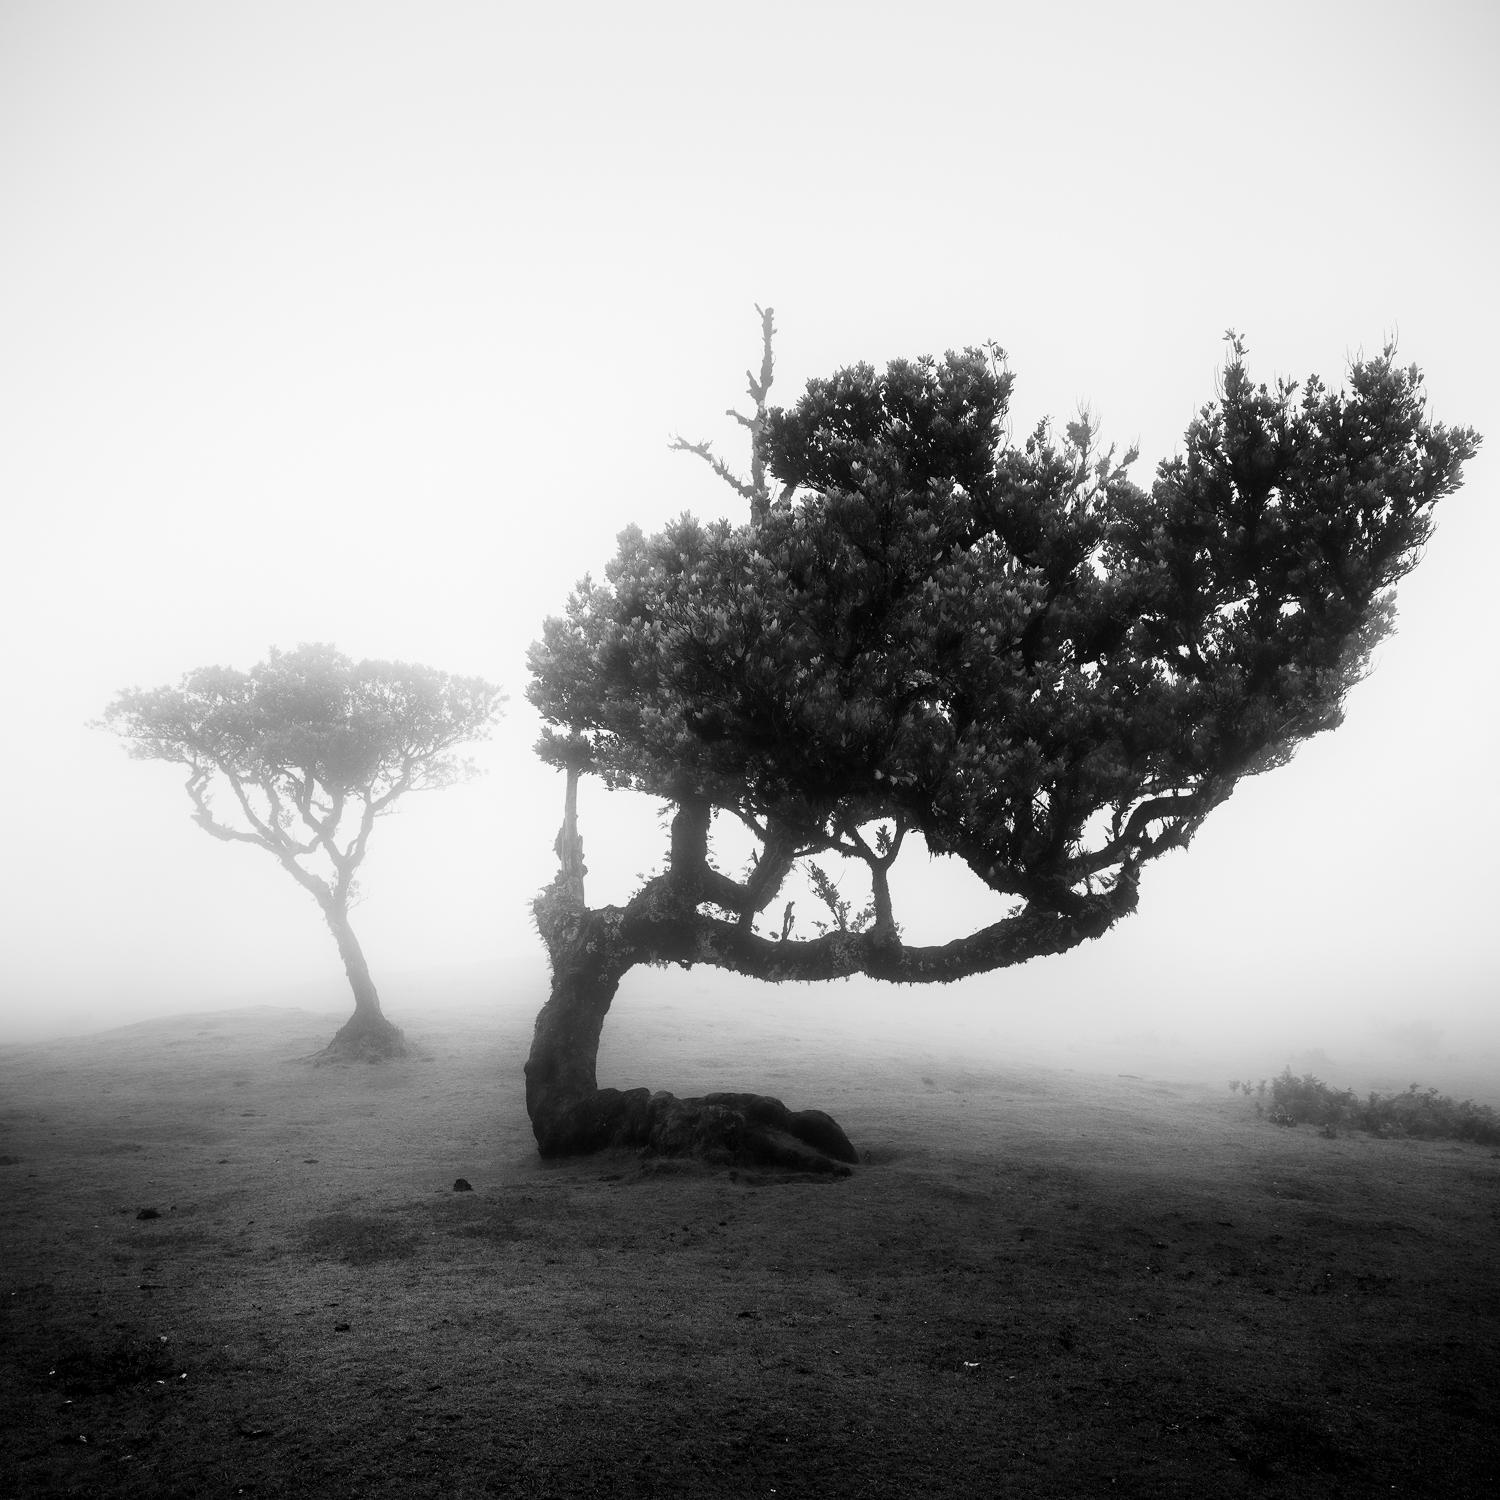  Ancient Laurel Cloud Forest, photographie d'art en noir et blanc, paysage, encadré - Photograph de Gerald Berghammer